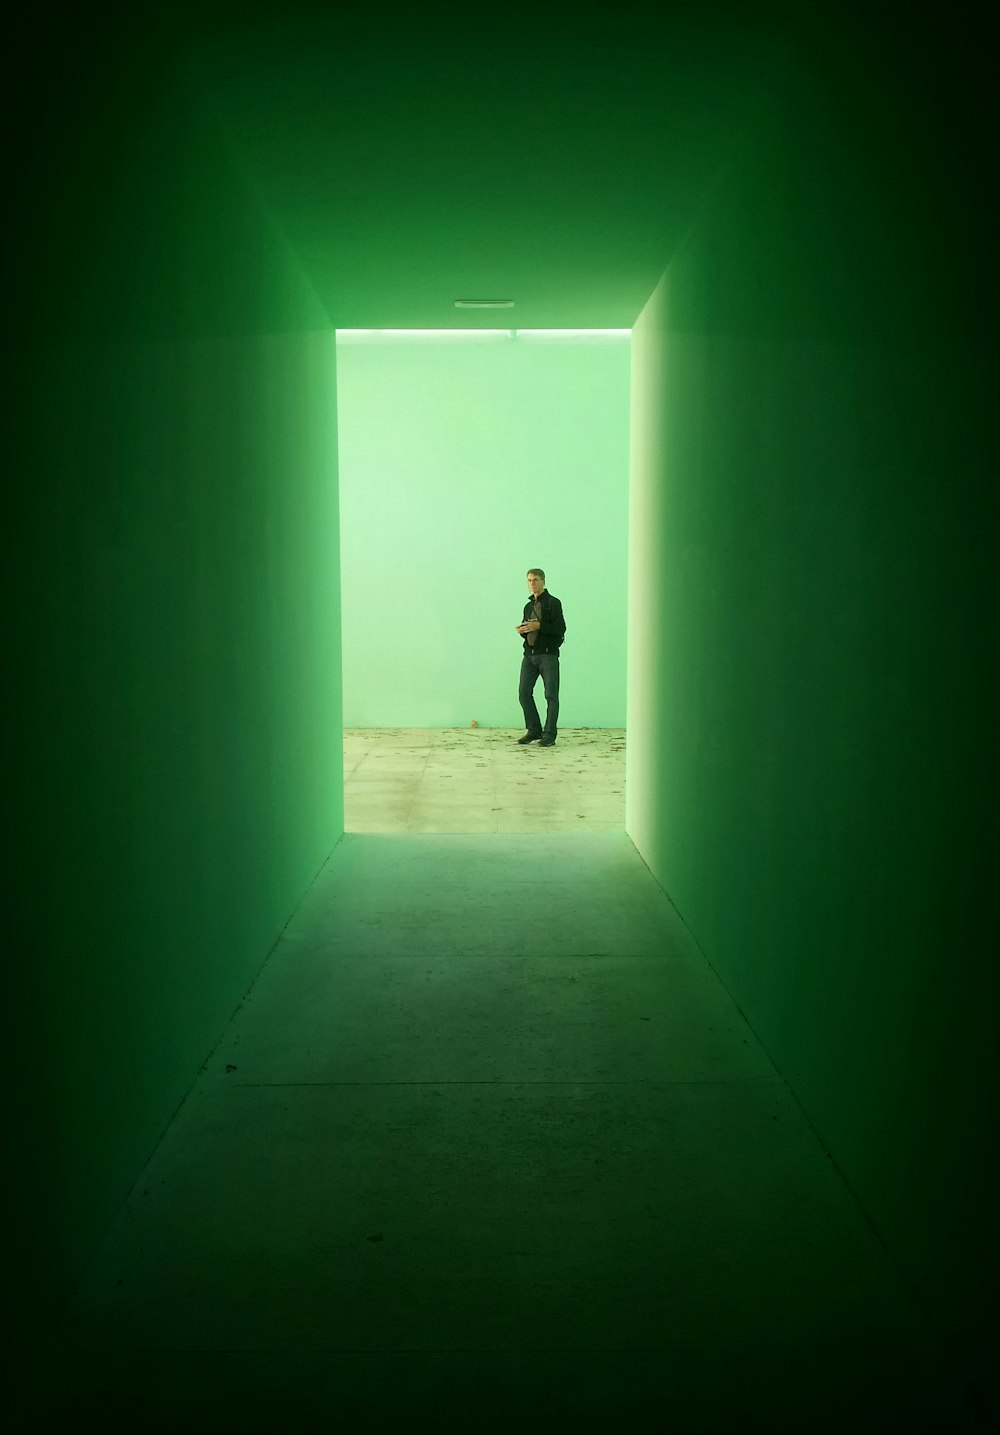 L’homme en veste noire se tient près d’un mur vert